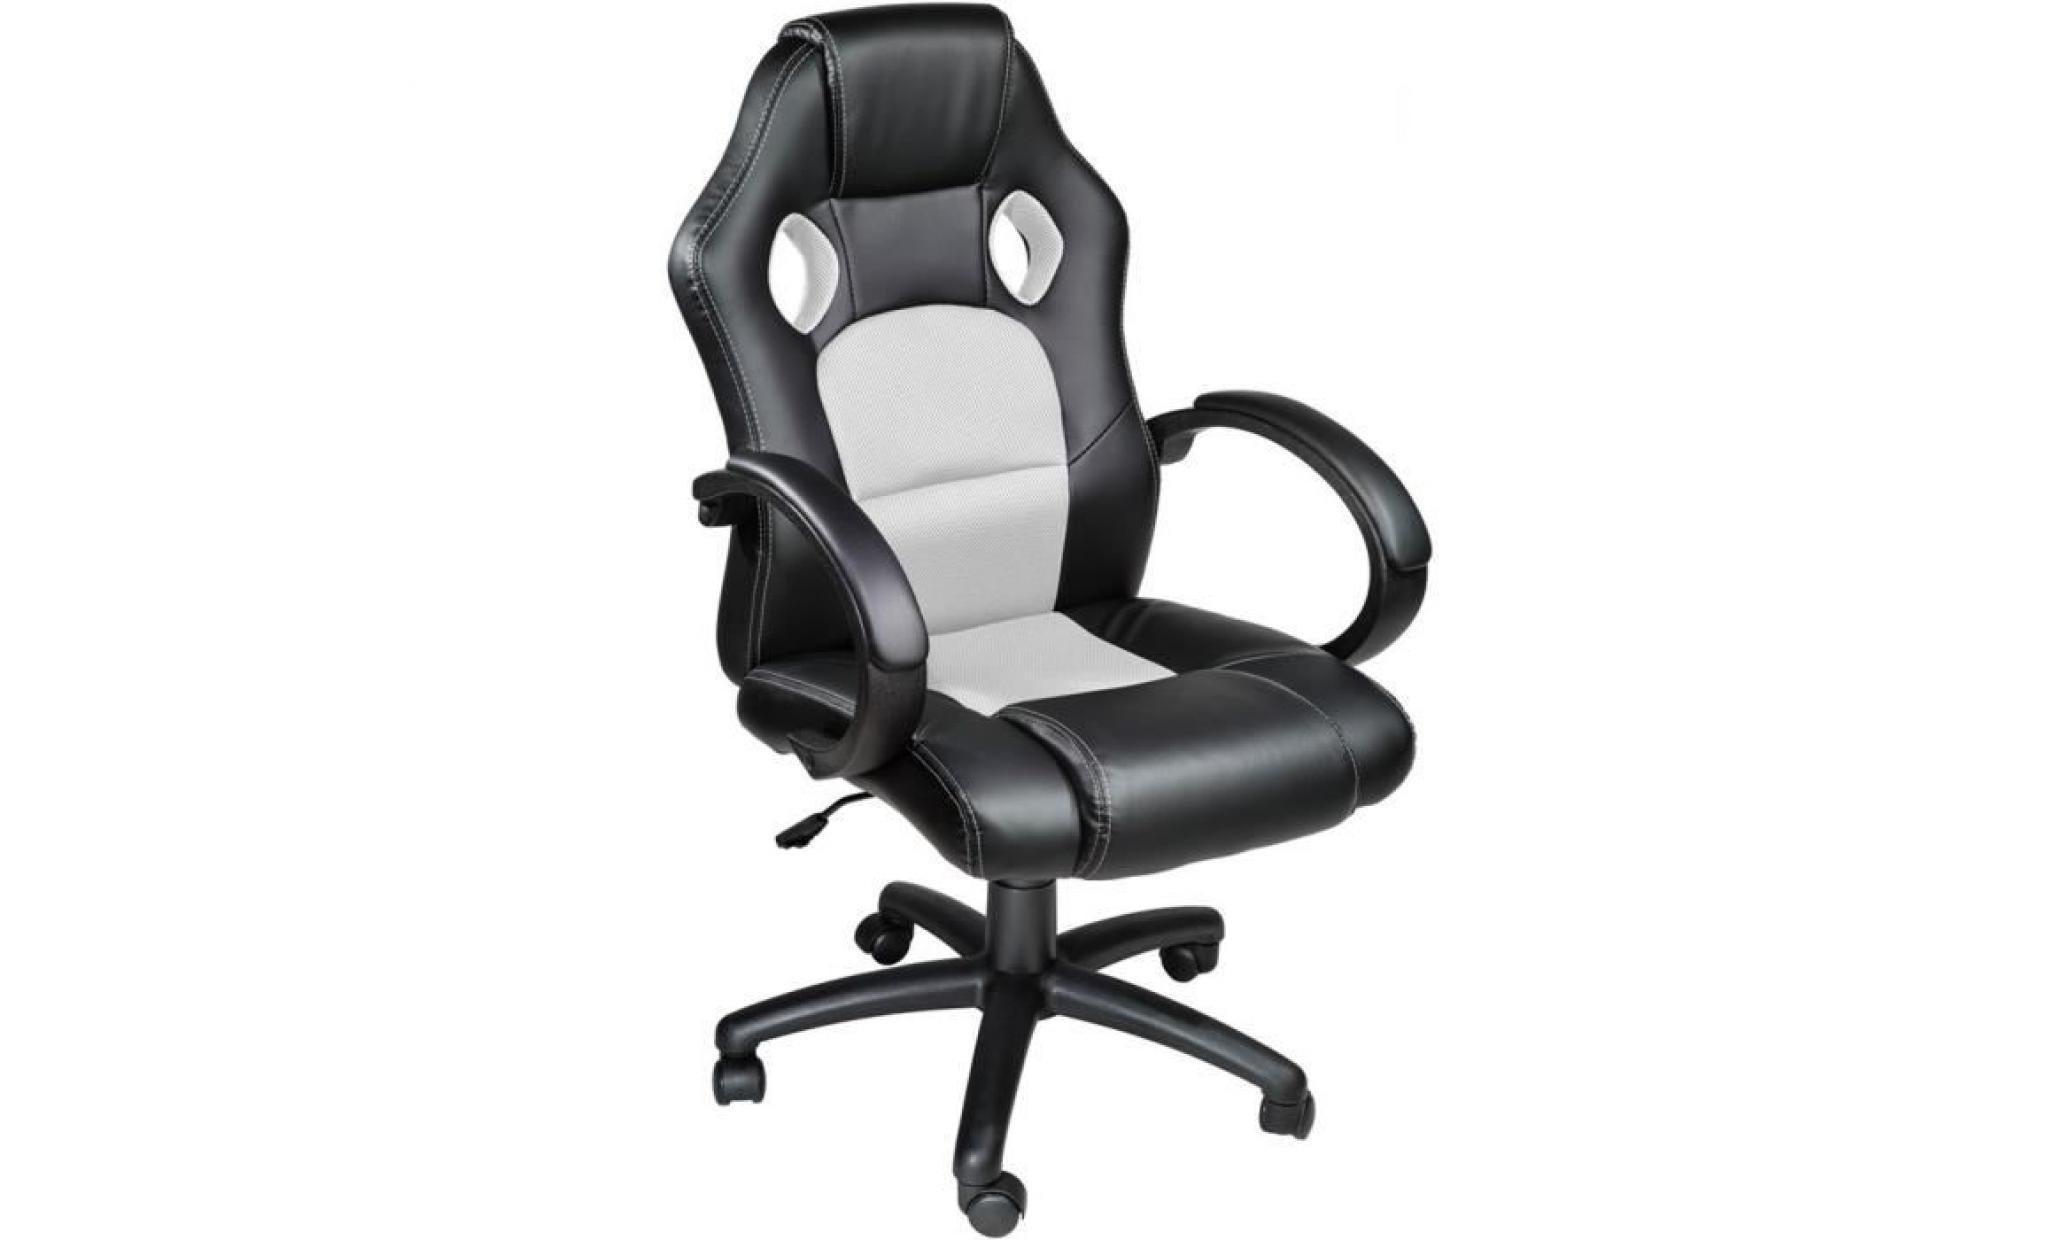 tectake chaise de bureau fauteuil de bureau racing sport noir / blanc rembourrage Épais   hauteur réglable   pivotante